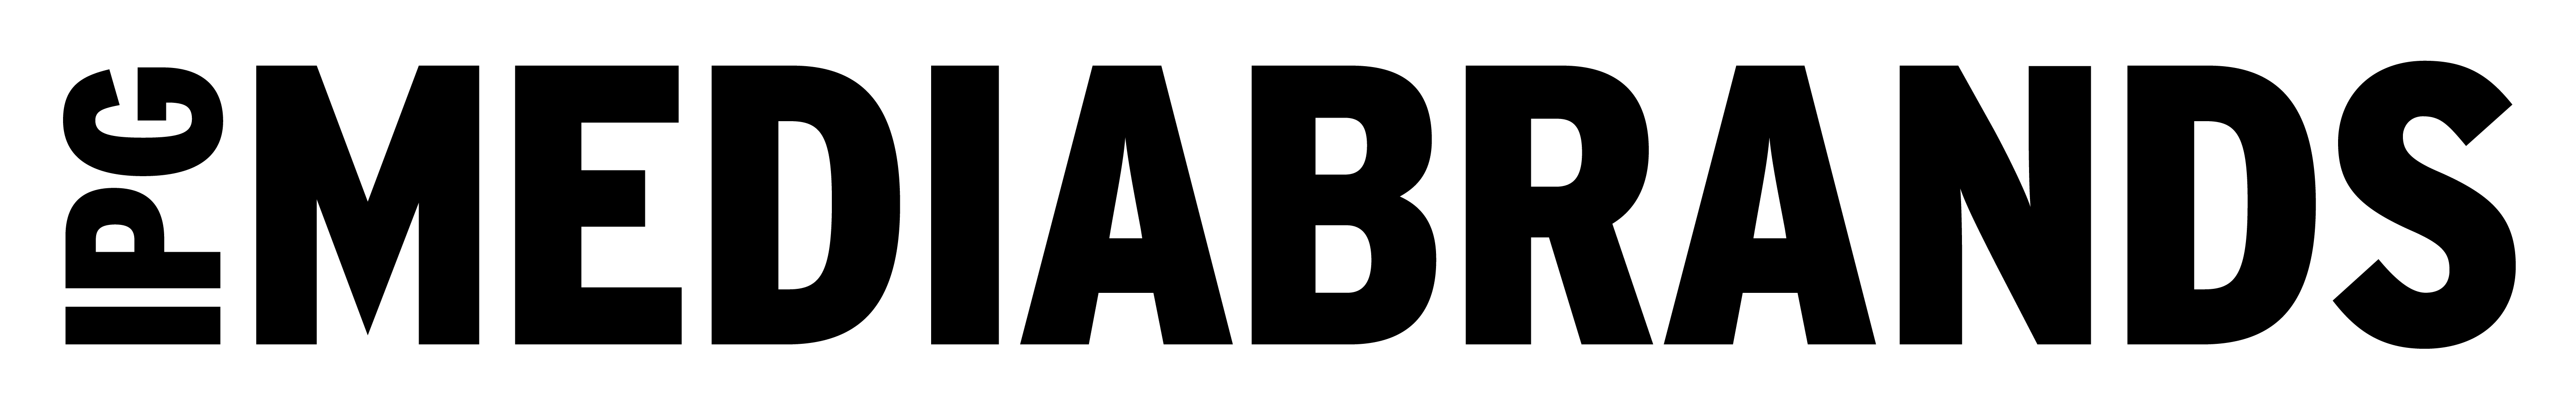 Mediabrands Careers Logo